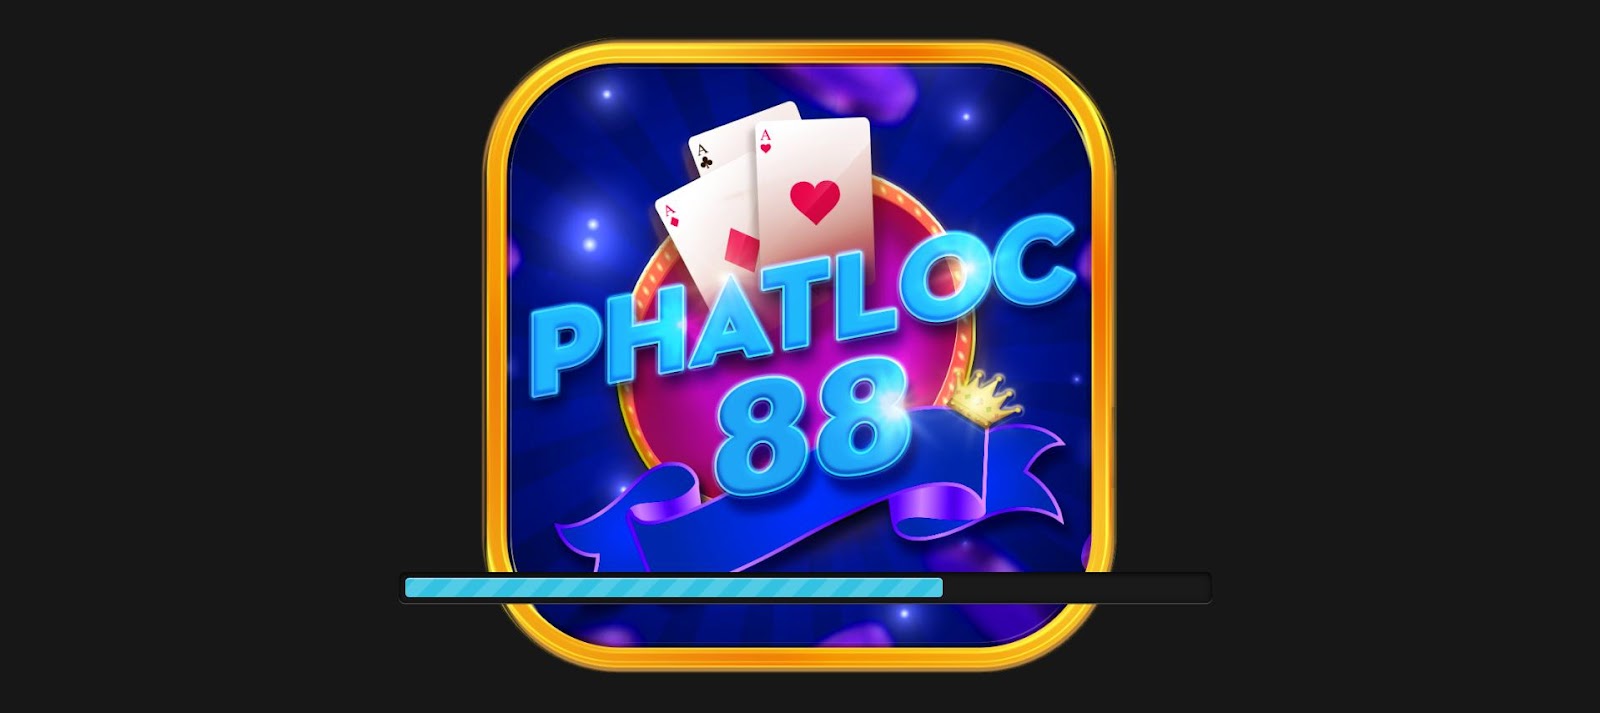 phatloc88 club